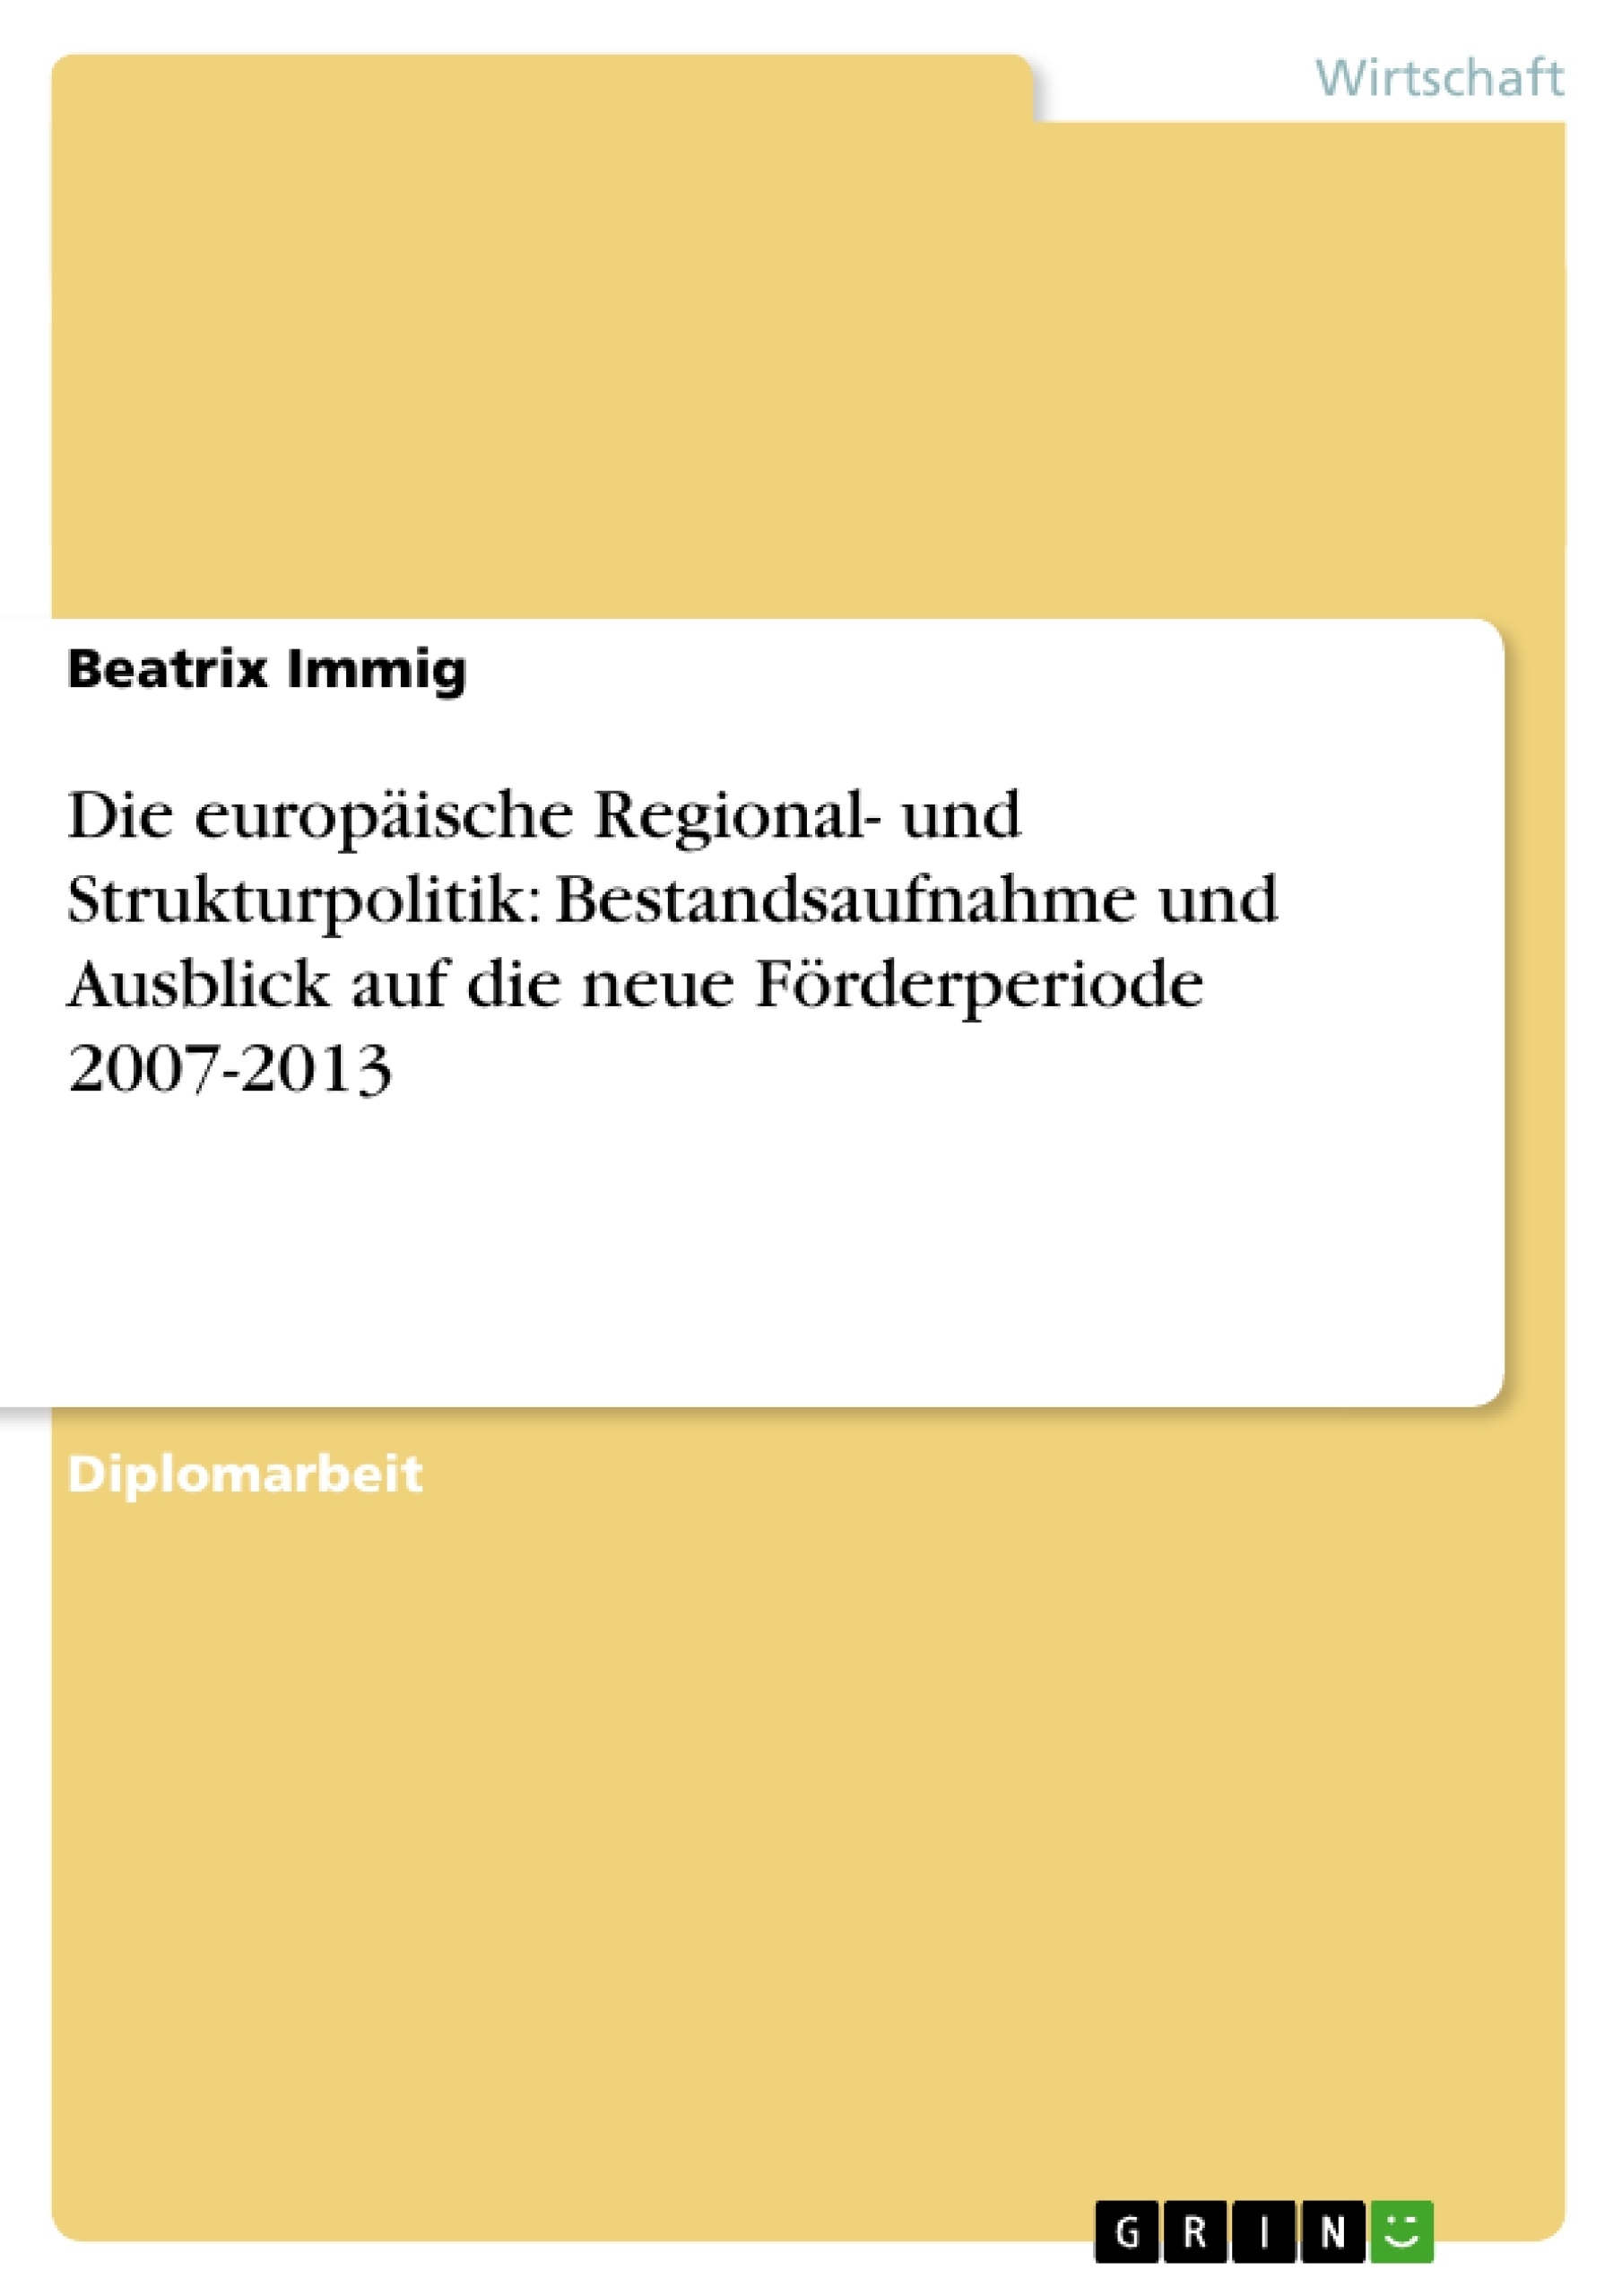 Title: Die europäische Regional- und Strukturpolitik: Bestandsaufnahme und Ausblick auf die neue Förderperiode 2007-2013